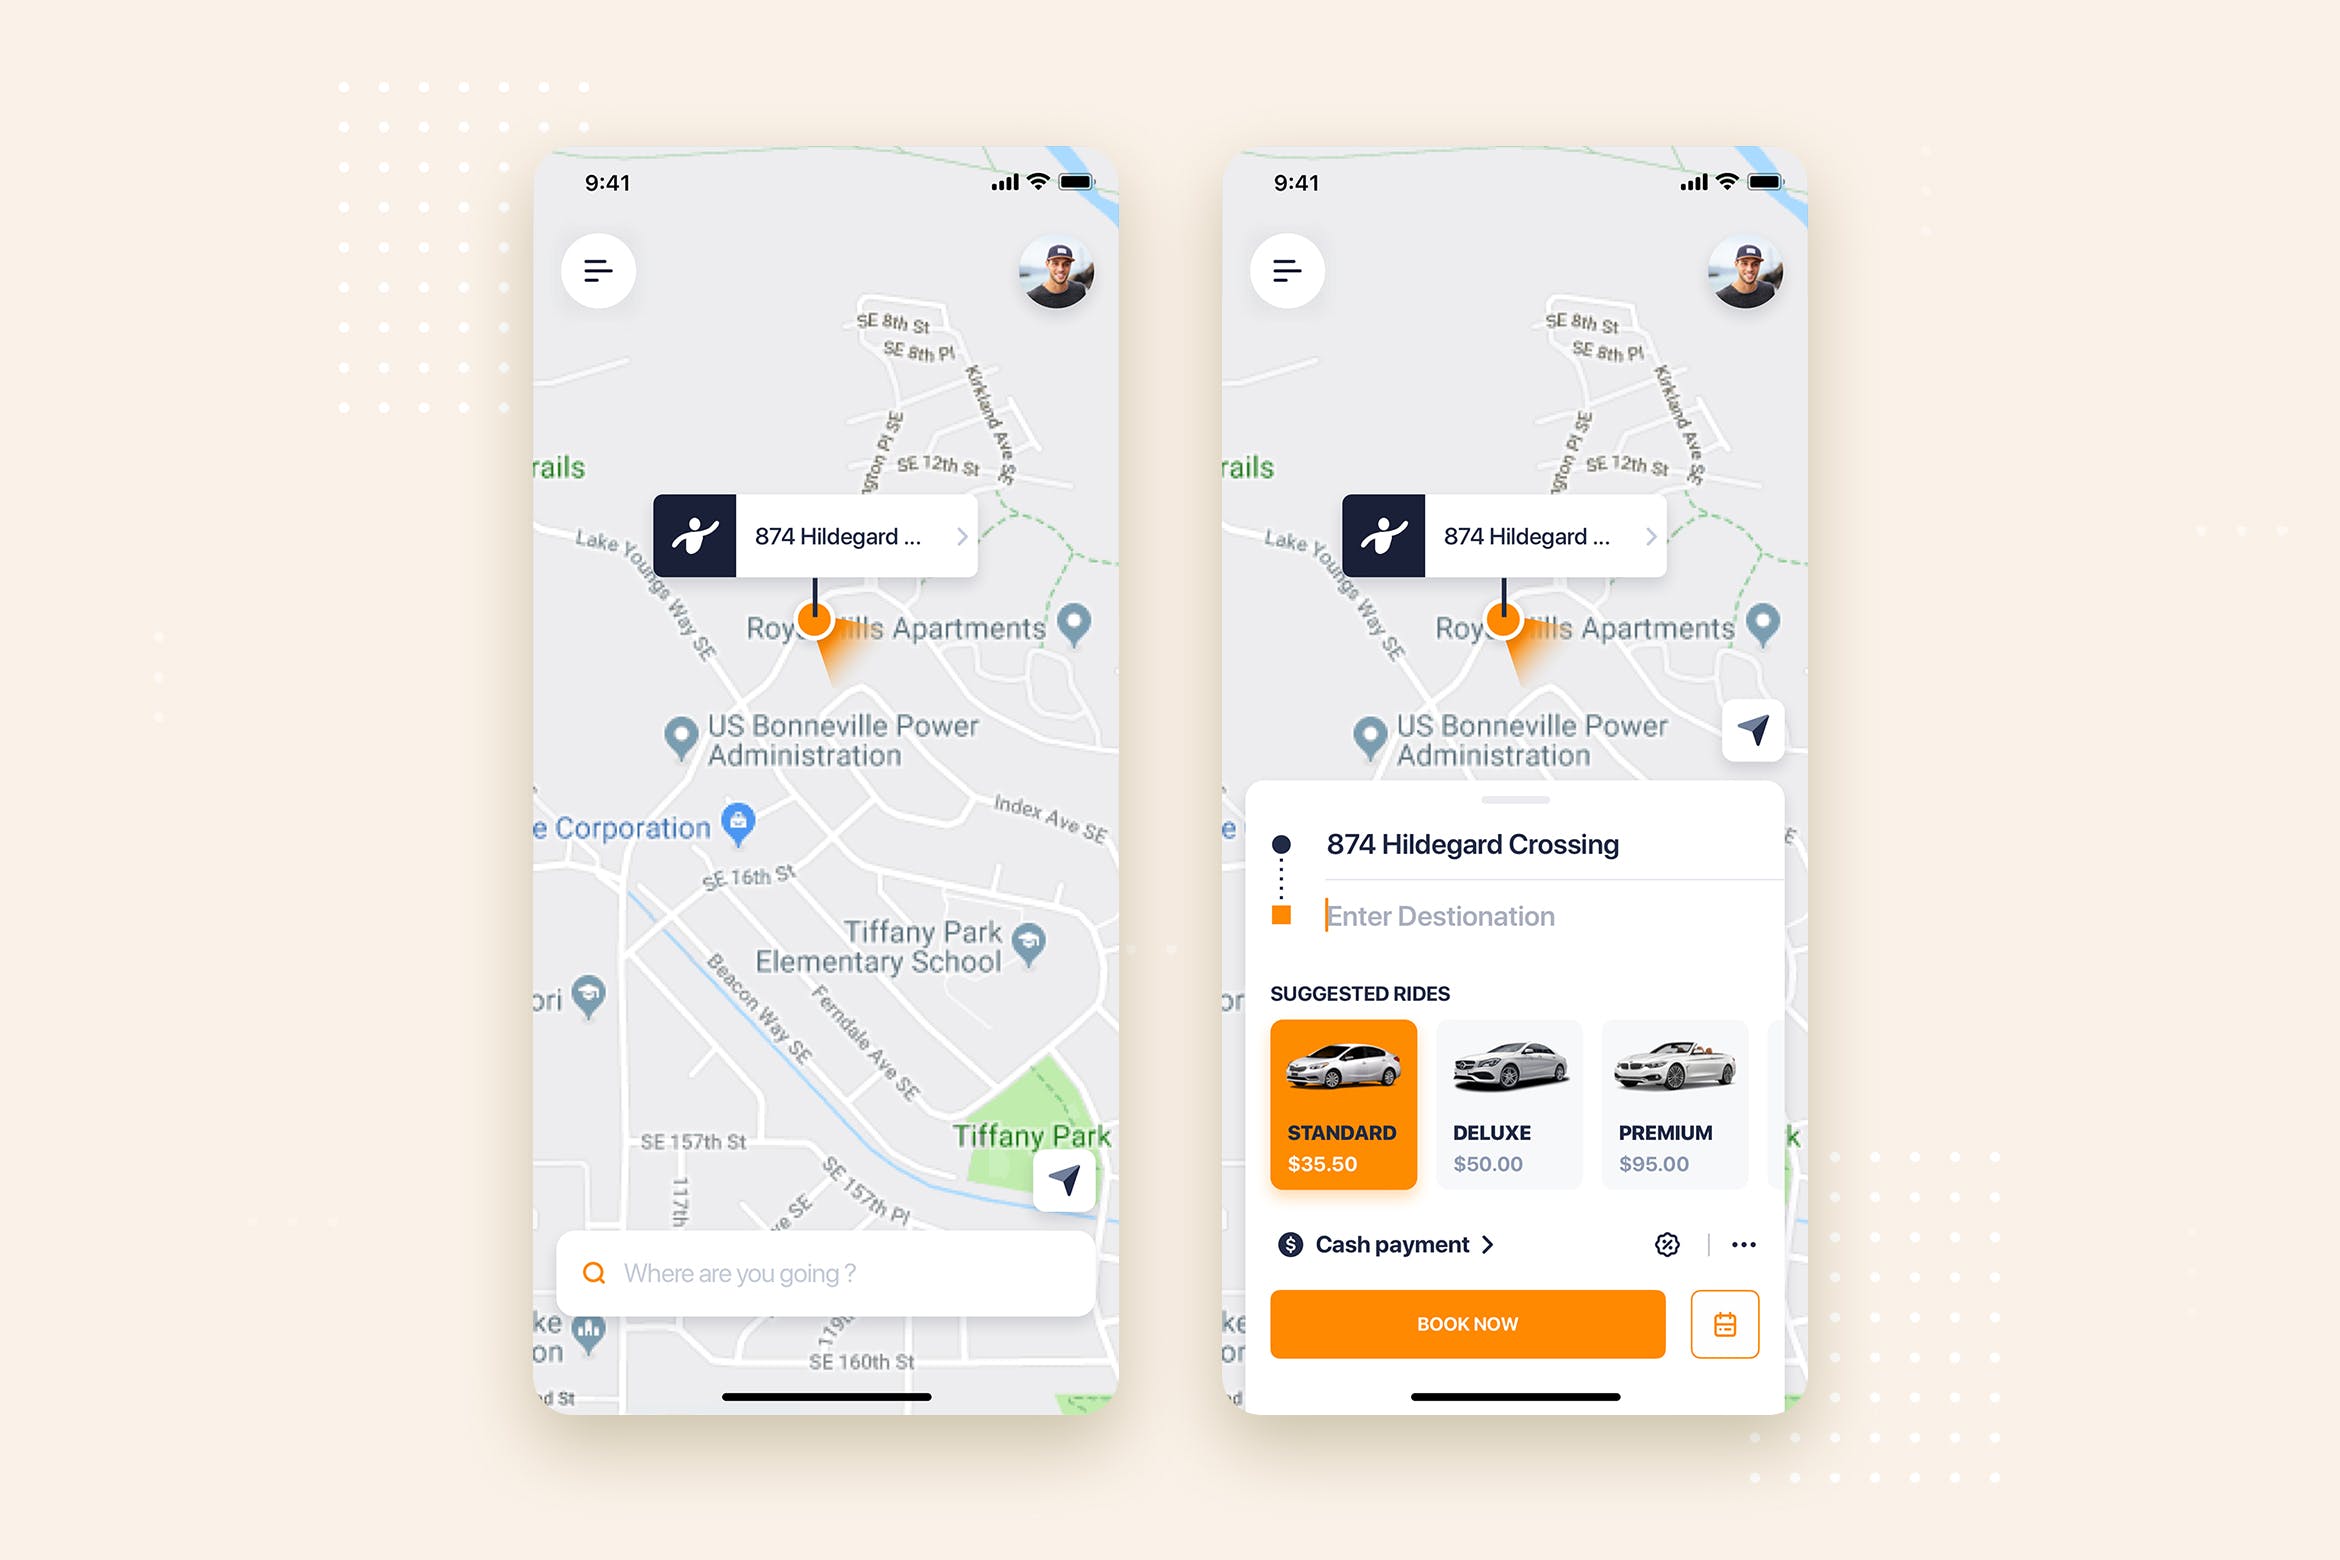 网约车APP应用预约界面UI设计素材库精选模板 Taxi Booking Mobile App UI Kit Template插图